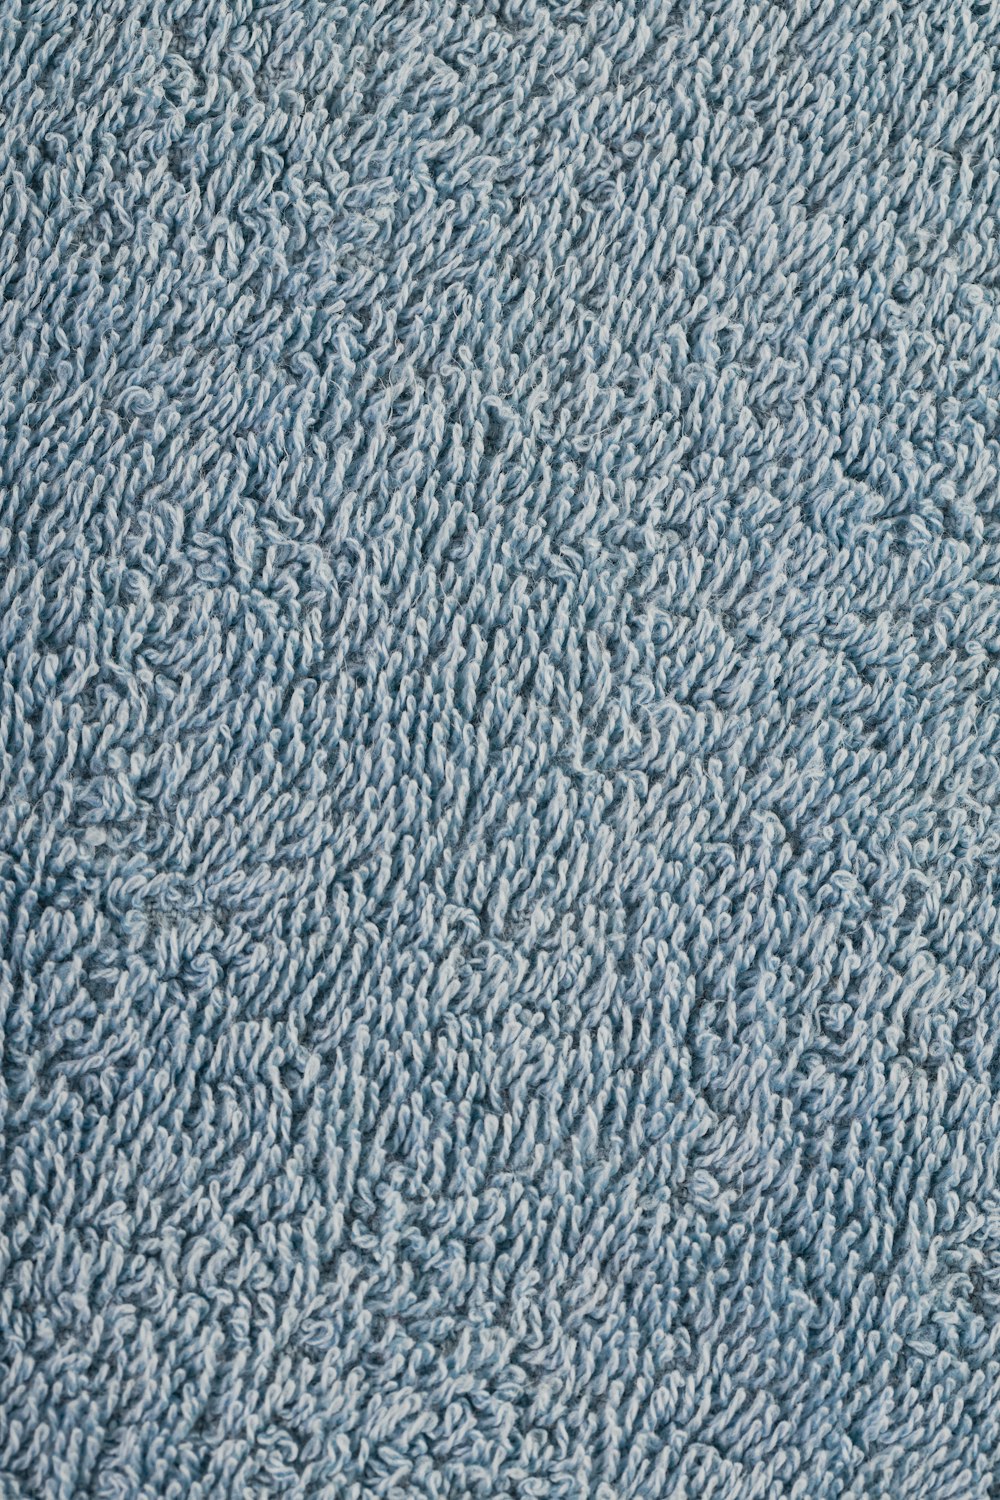 Nahaufnahme einer Textur mit blauem Teppich